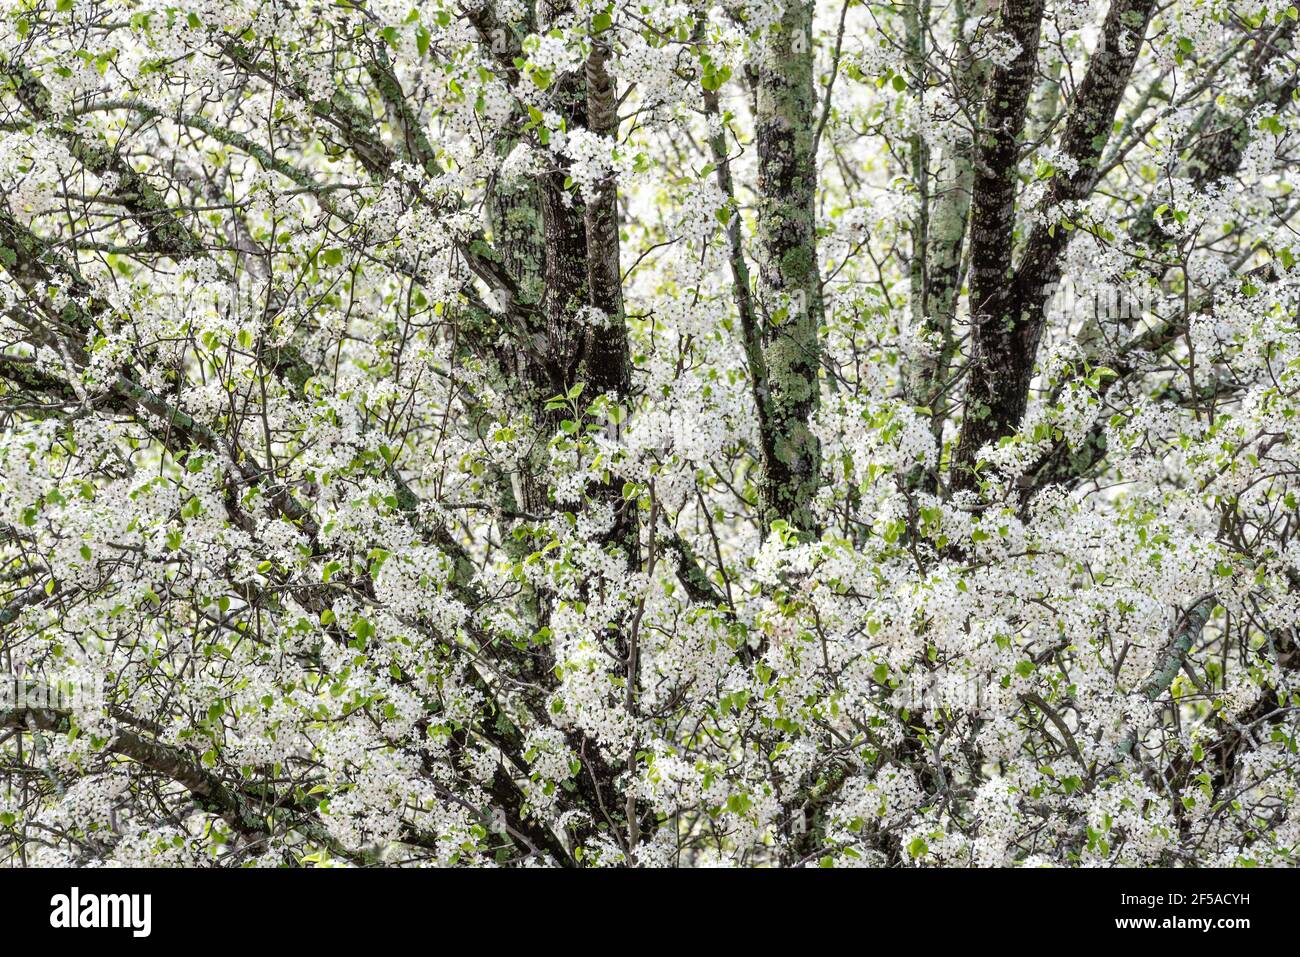 El árbol de pera de Bradford (Pyrus calleryana) en flor anuncia la llegada de la primavera en Atlanta, Georgia. (EE.UU.) Foto de stock